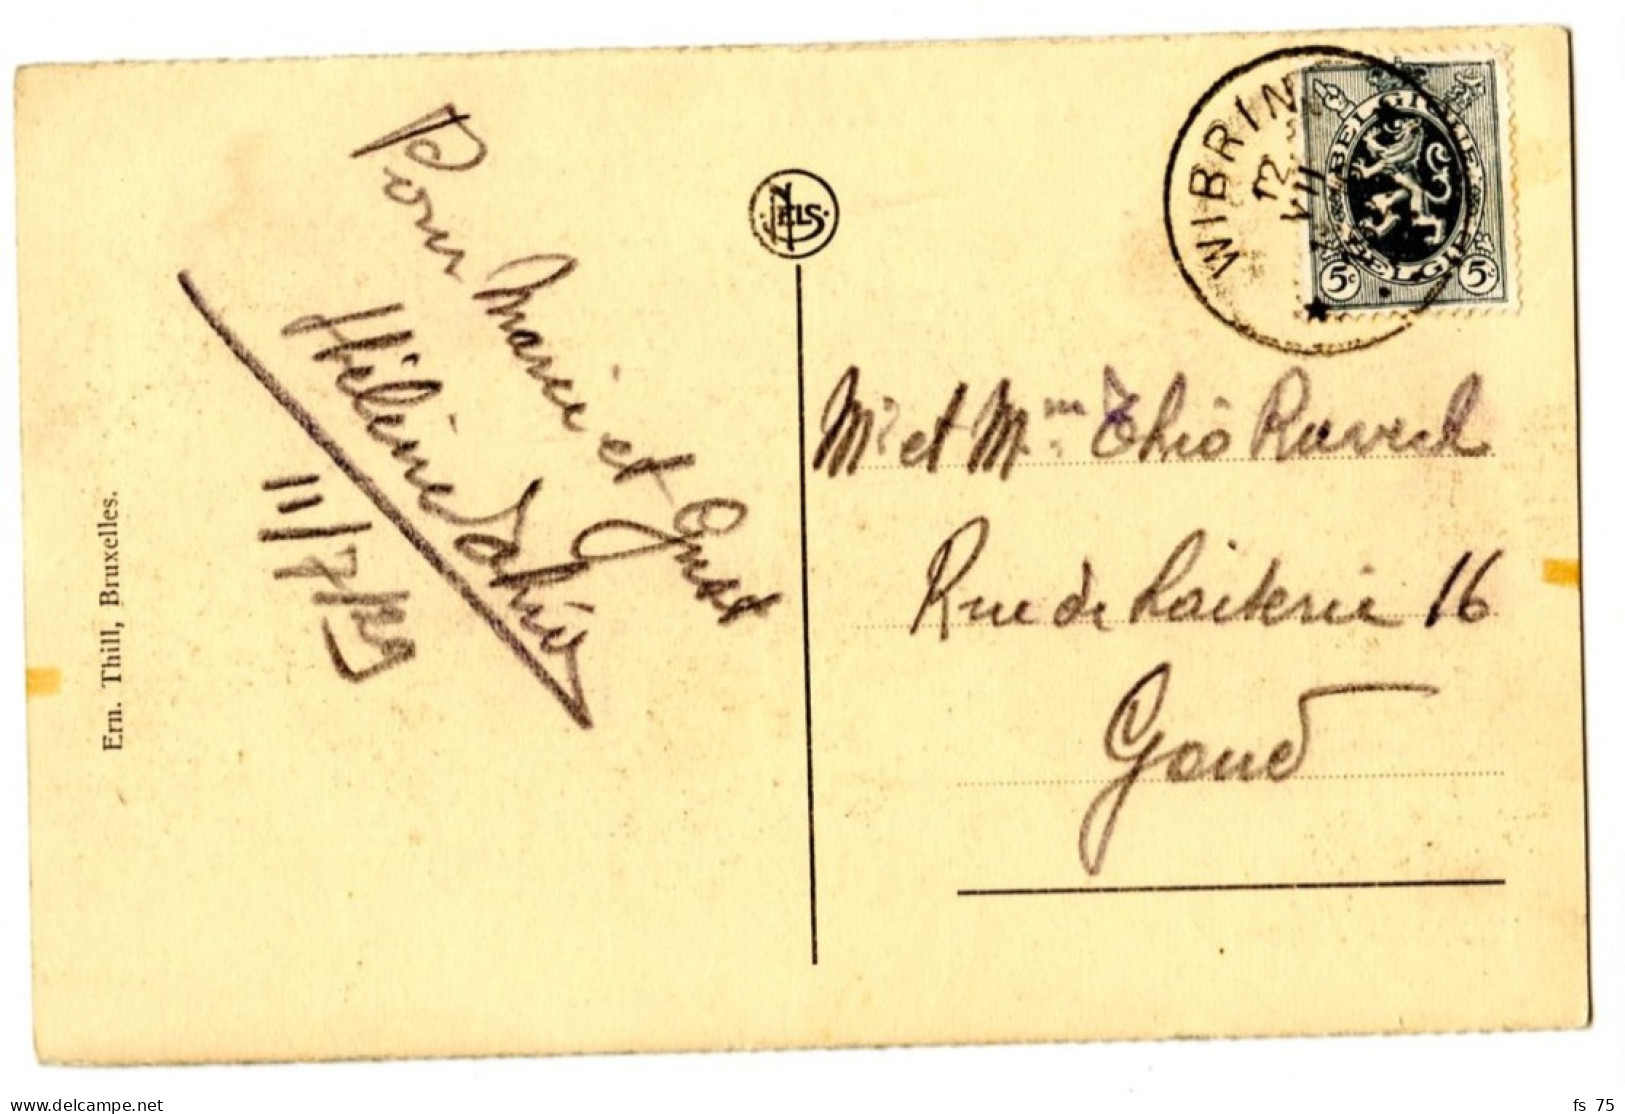 BELGIQUE - COB 279 SIMPLE CERCLE RELAIS A ETOILES WIBRIN SUR CARTE POSTALE, 1929 - Postmarks With Stars